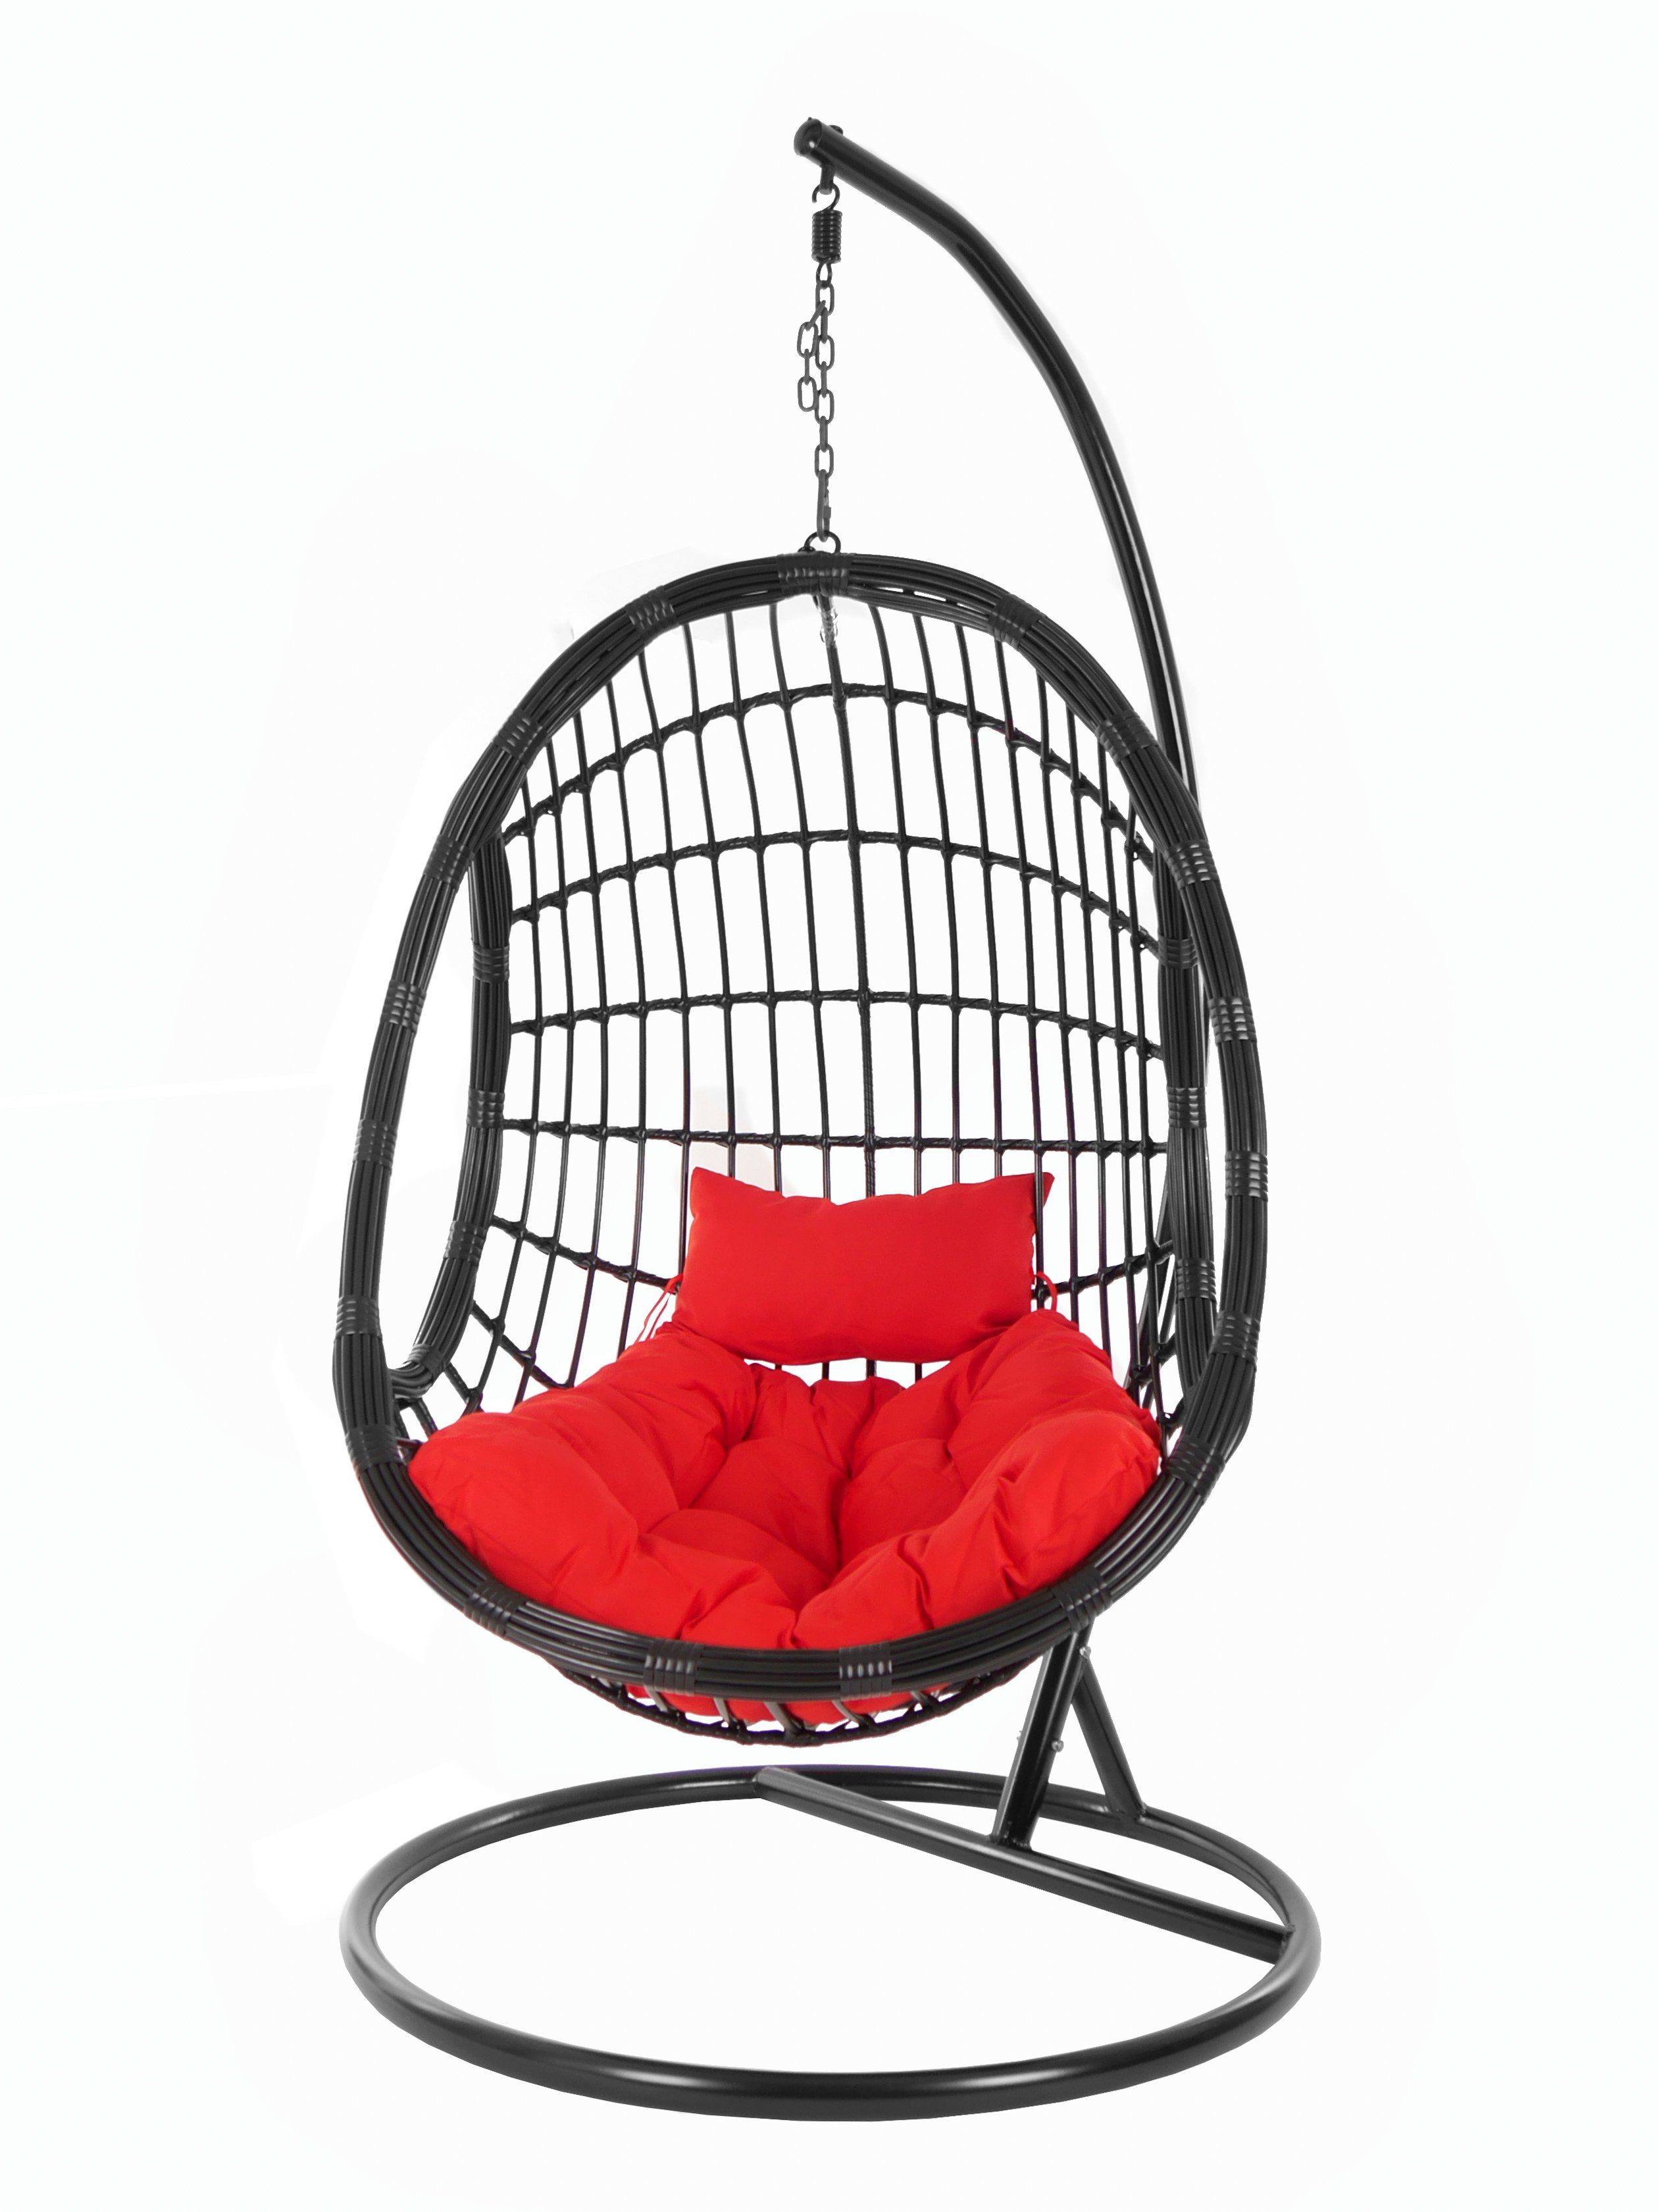 KIDEO Hängesessel PALMANOVA black, mit Gestell und rot Chair, Schwebesessel, Hängesessel Loungemöbel, Design edles Kissen, scarlet) (3050 Swing schwarz